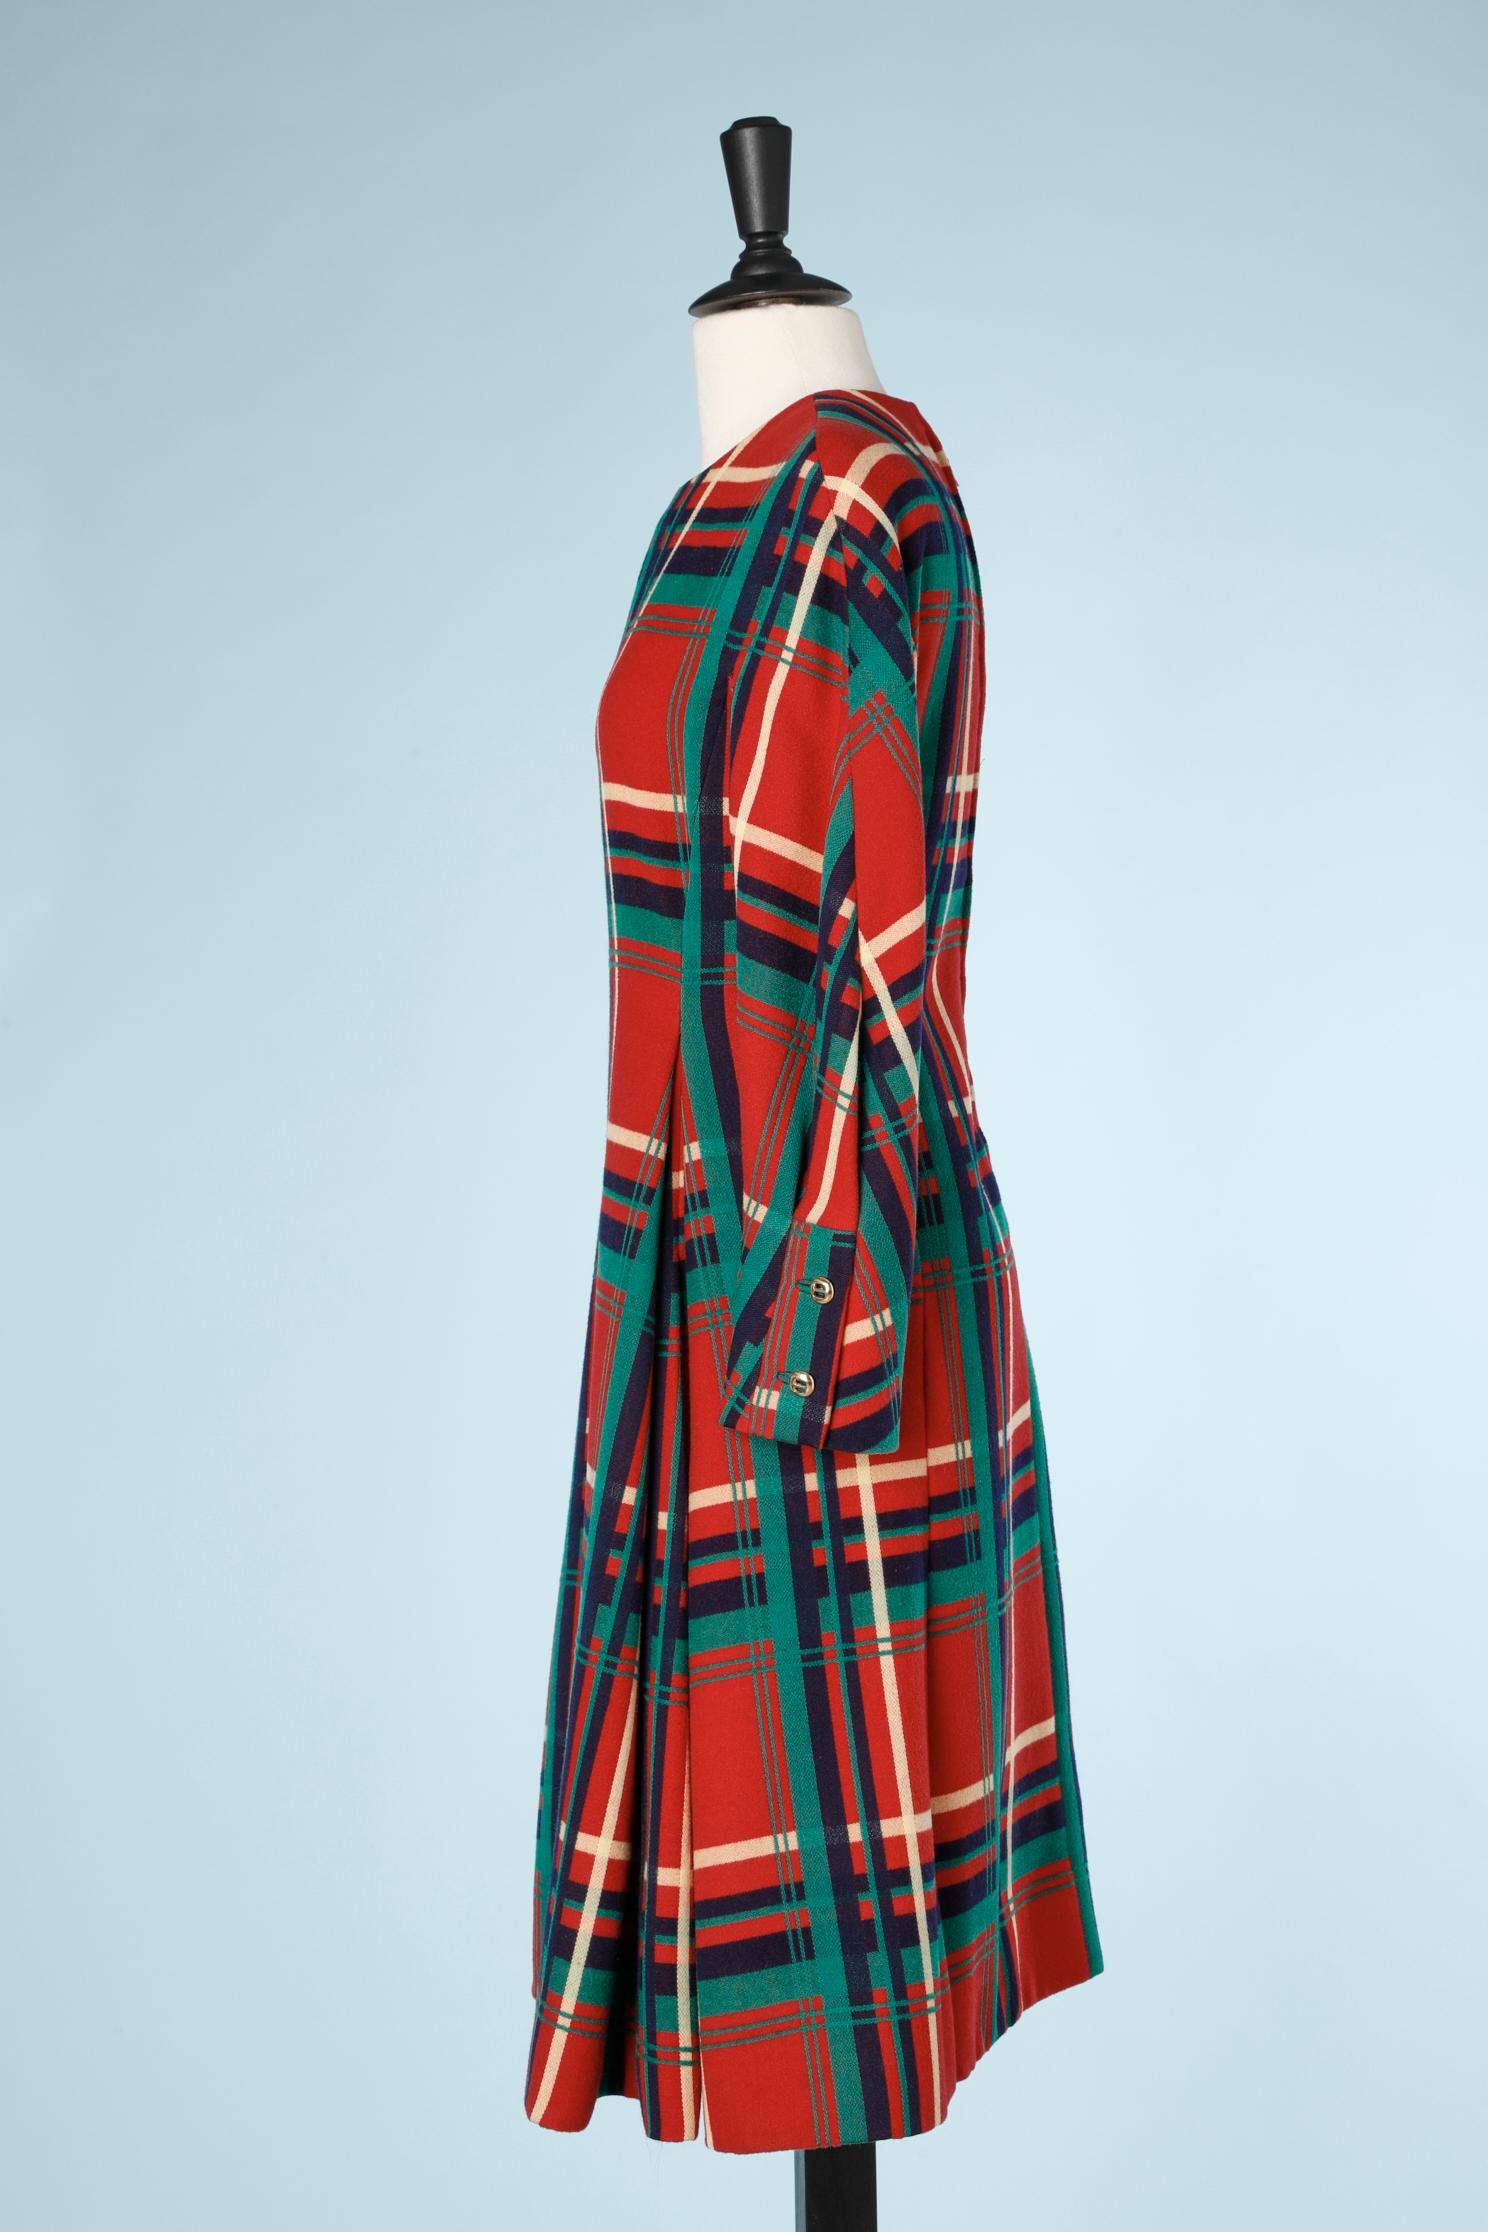 Dress-suit  in wool tartan with 